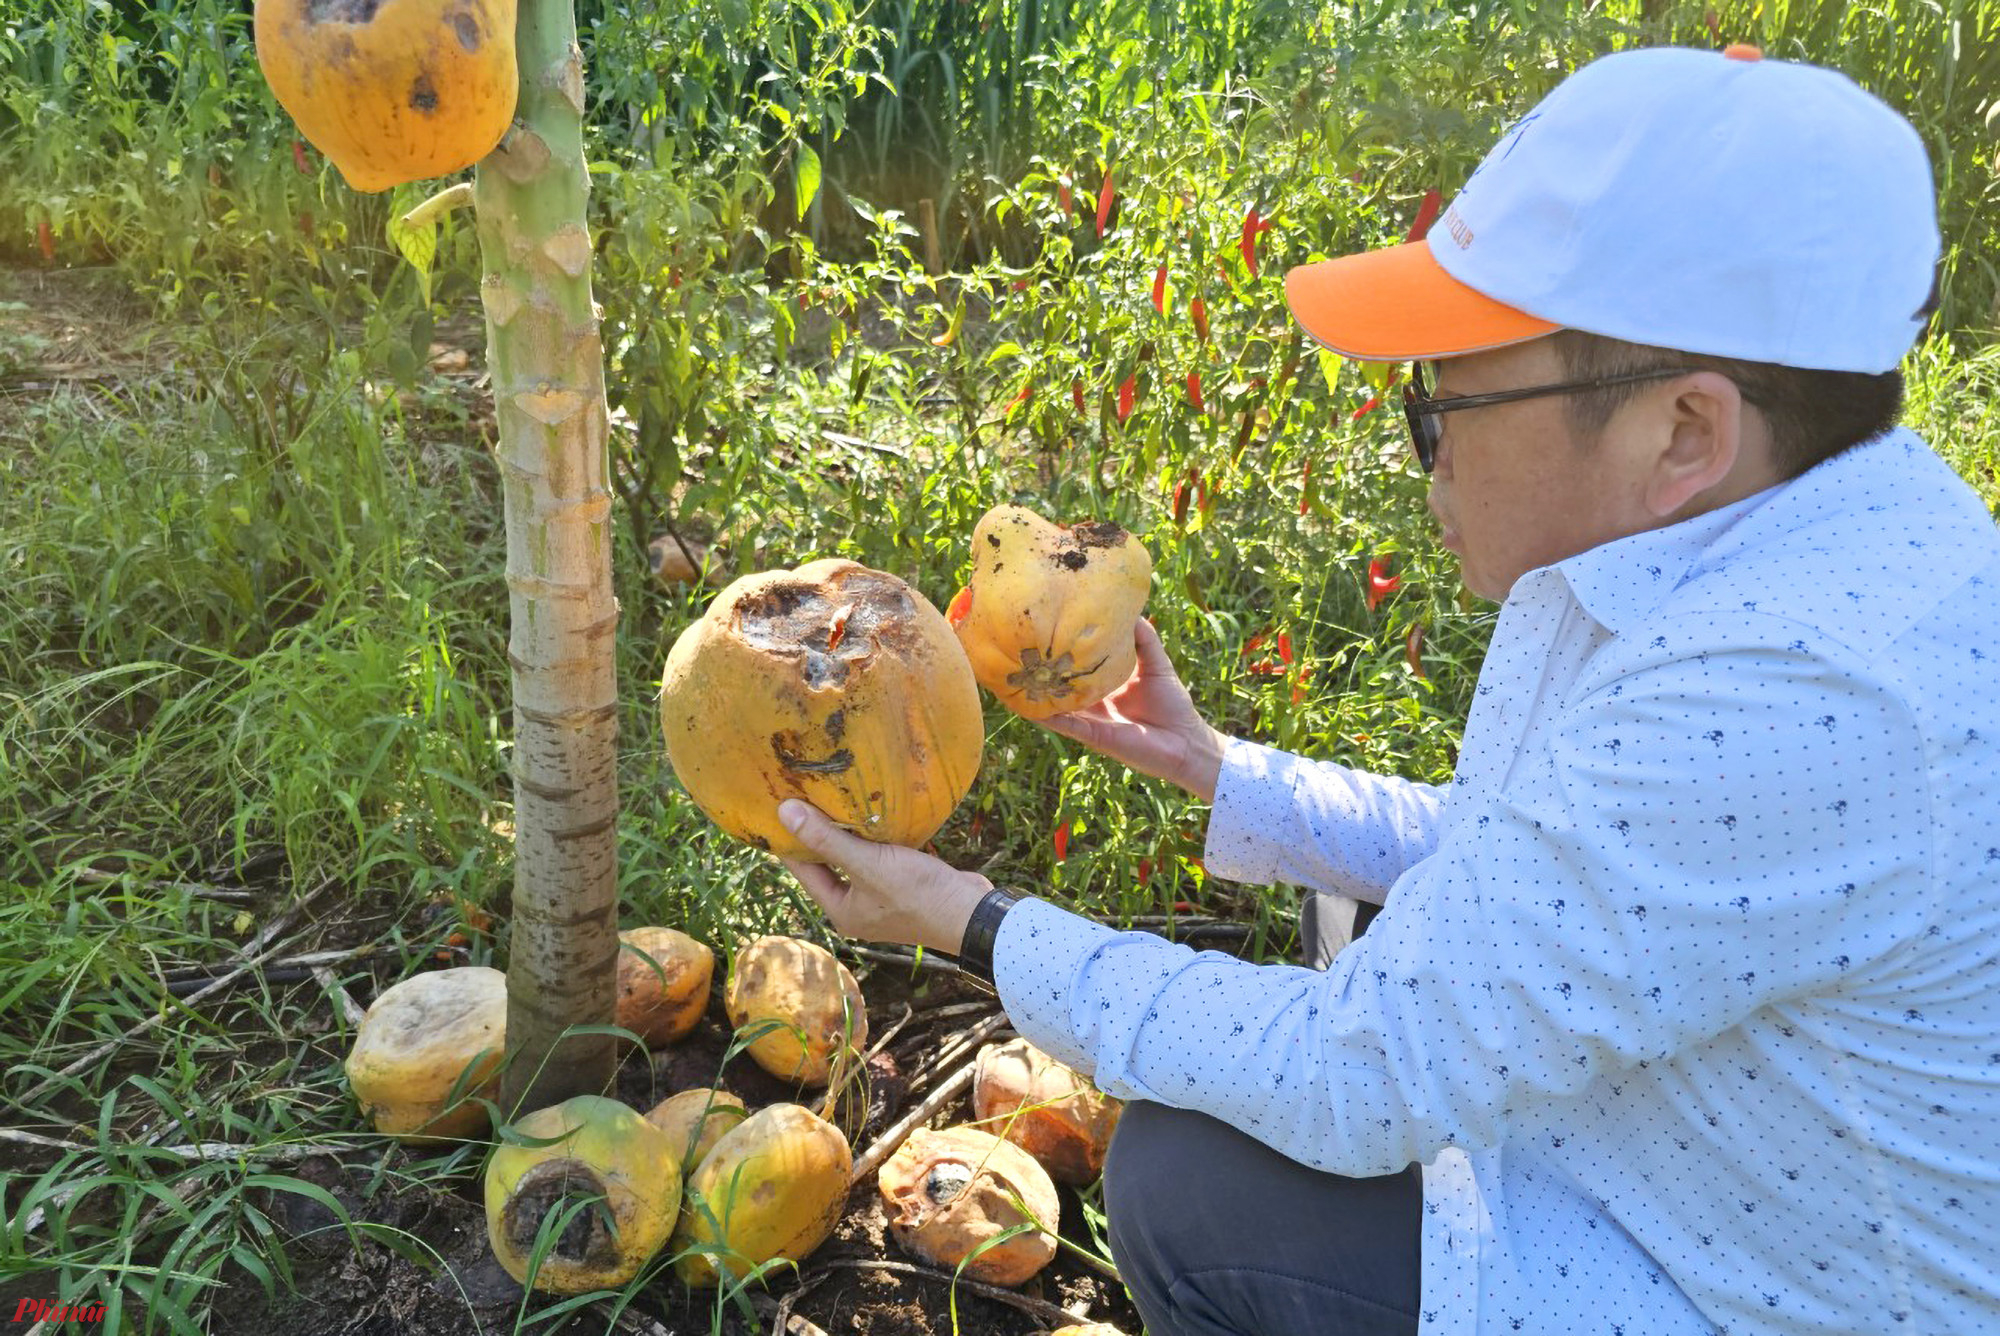 Ông Nguyễn Quang Trung - Giám đốc HTX nông nghiệp xã Tây Hiếu cho biết, giống đu đủ được trồng theo dự án này là đu đủ Đài Loan. Mỗi cây giống được mua với giá 8.000 đồng. Hiện phía Công ty cổ phần Chanh leo Nafoods đã đưa ra phương án hỗ trợ 225 triệu đồng/ha.